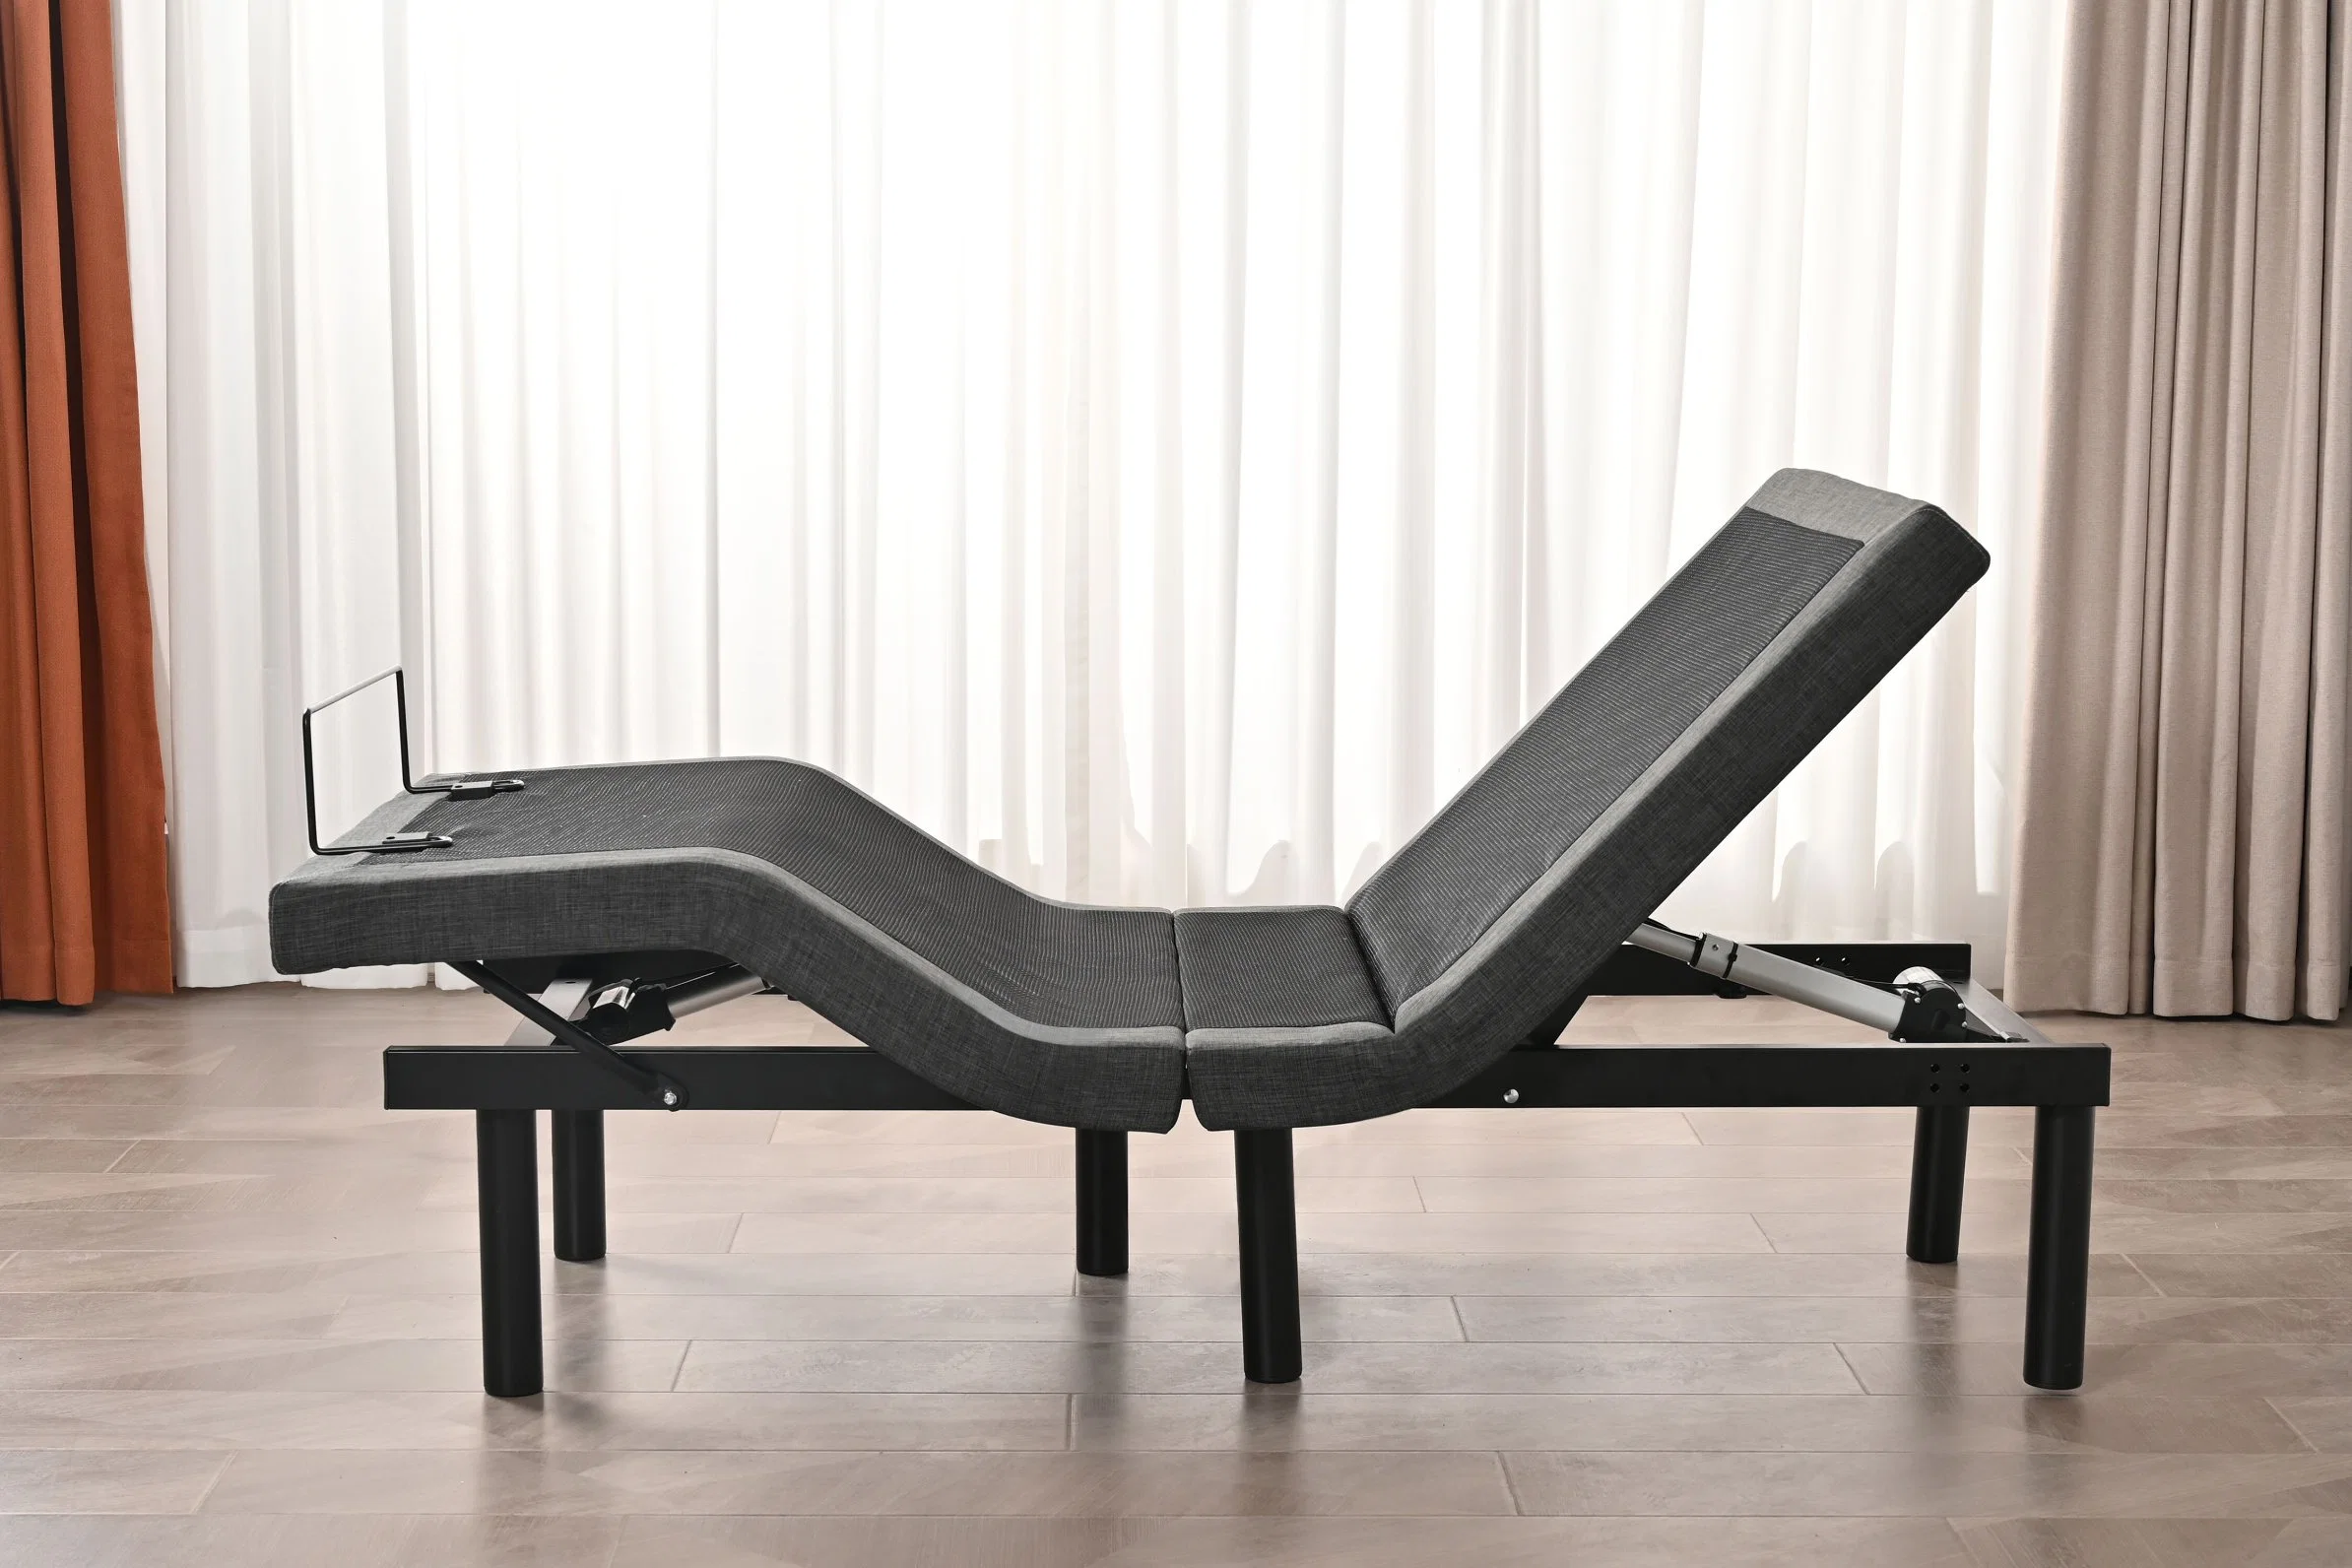 Konfurt Okin Motor Massage Adjustable Bed Frame with LED Light USB Charging Bedroom Furniture